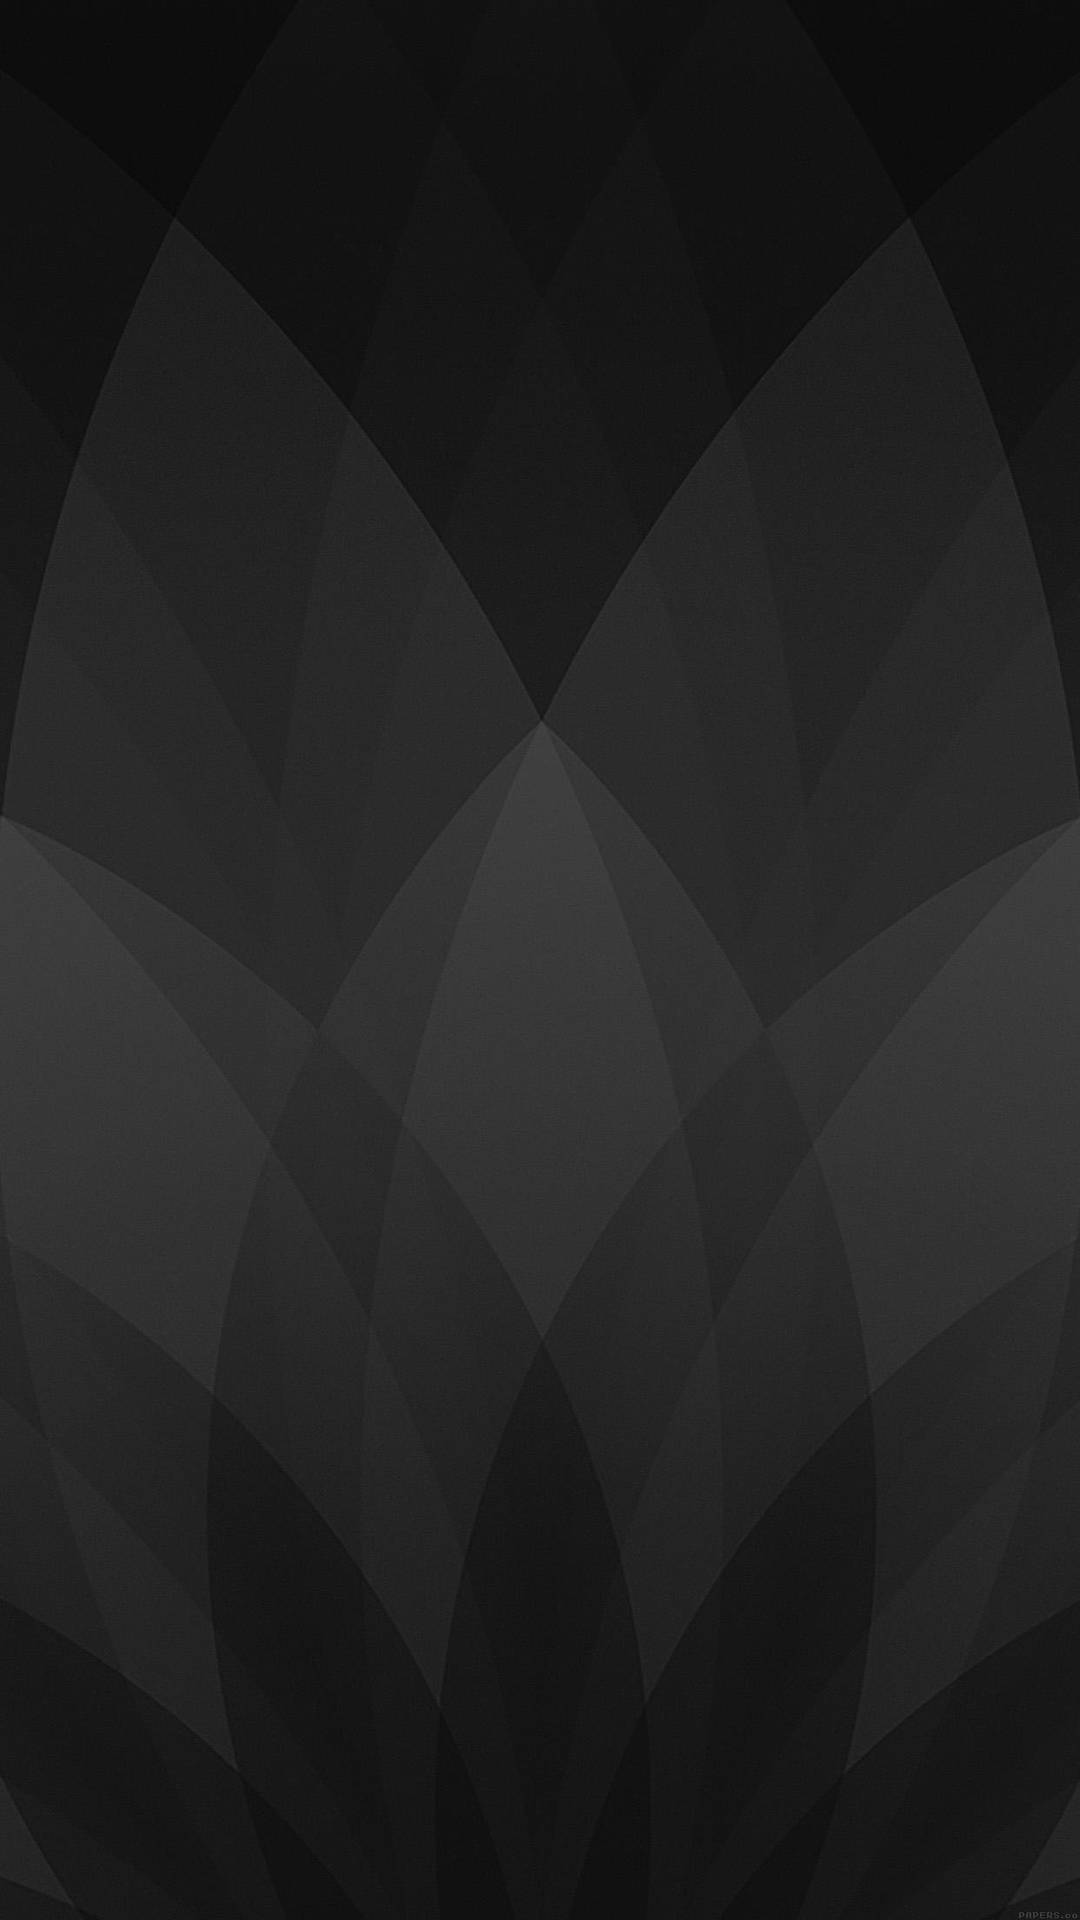 Petals Design Black And Grey Iphone Wallpaper